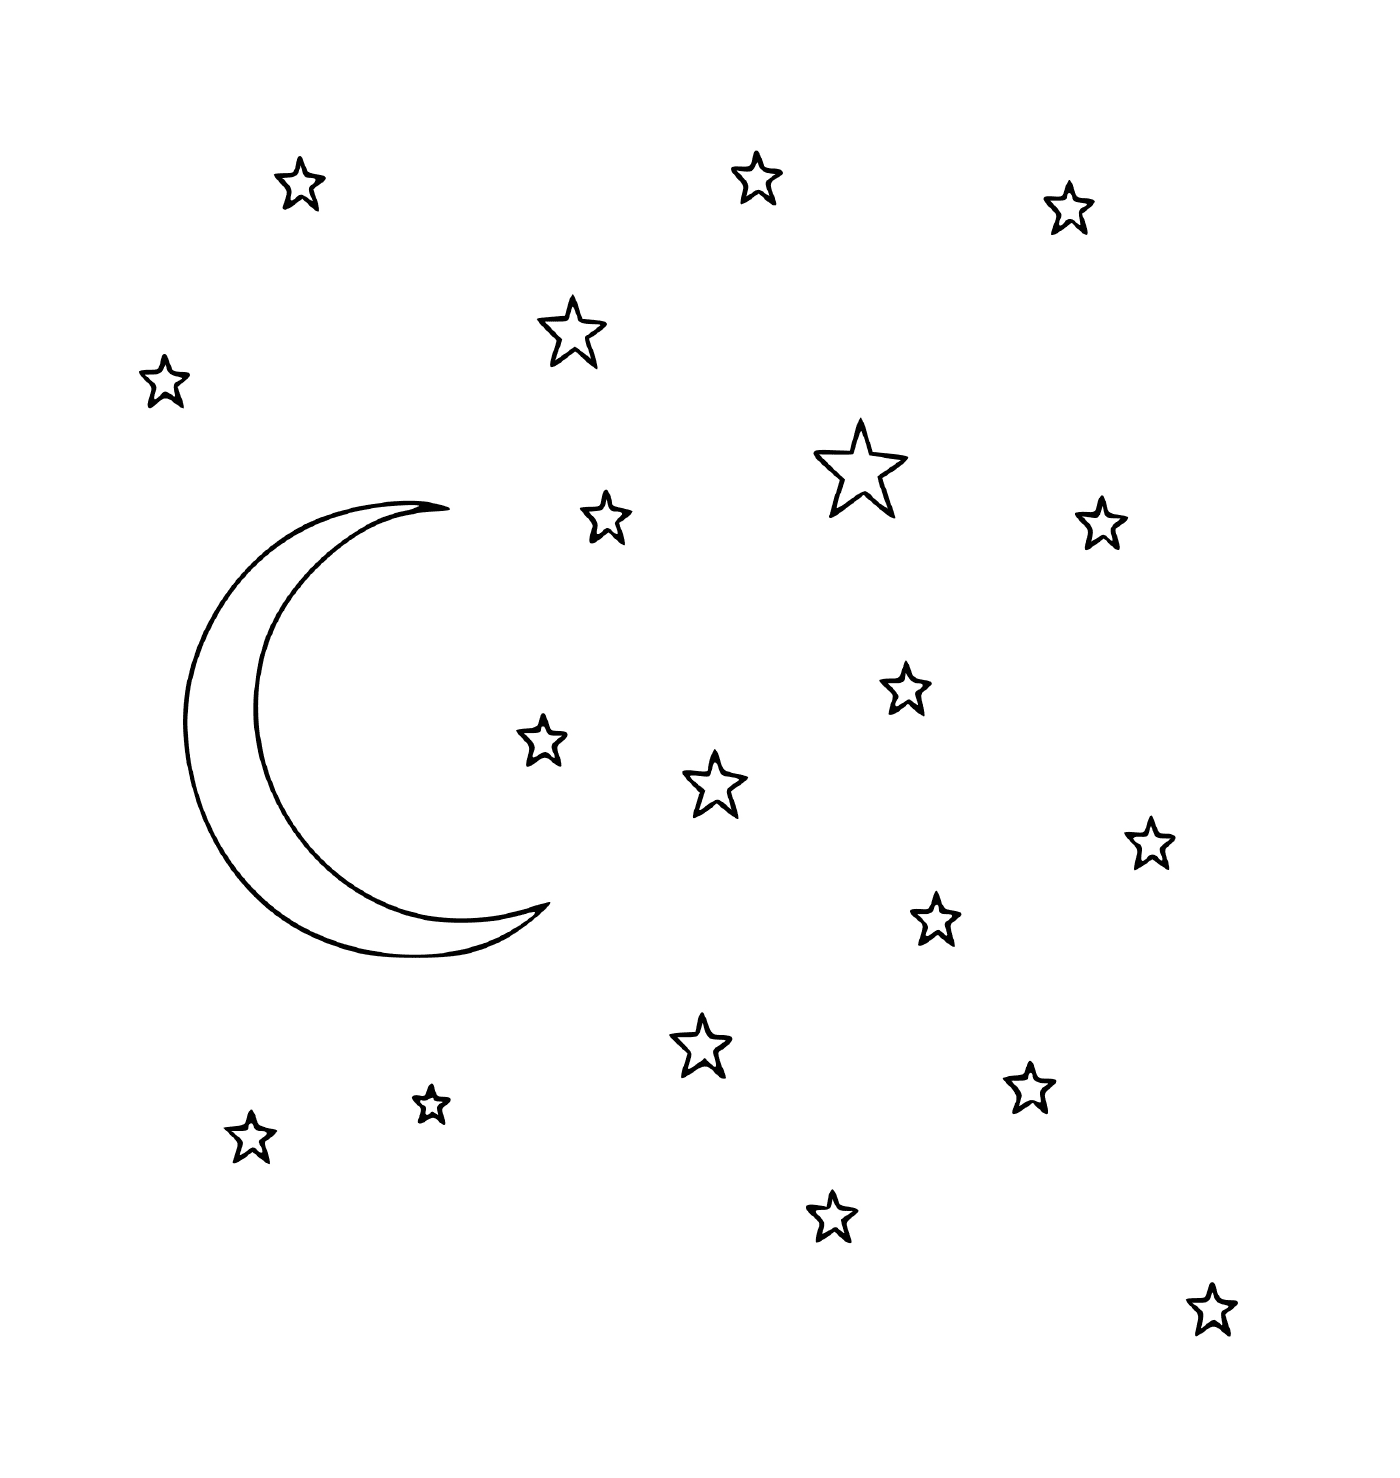  उज्ज्वल चाँद और तारों 